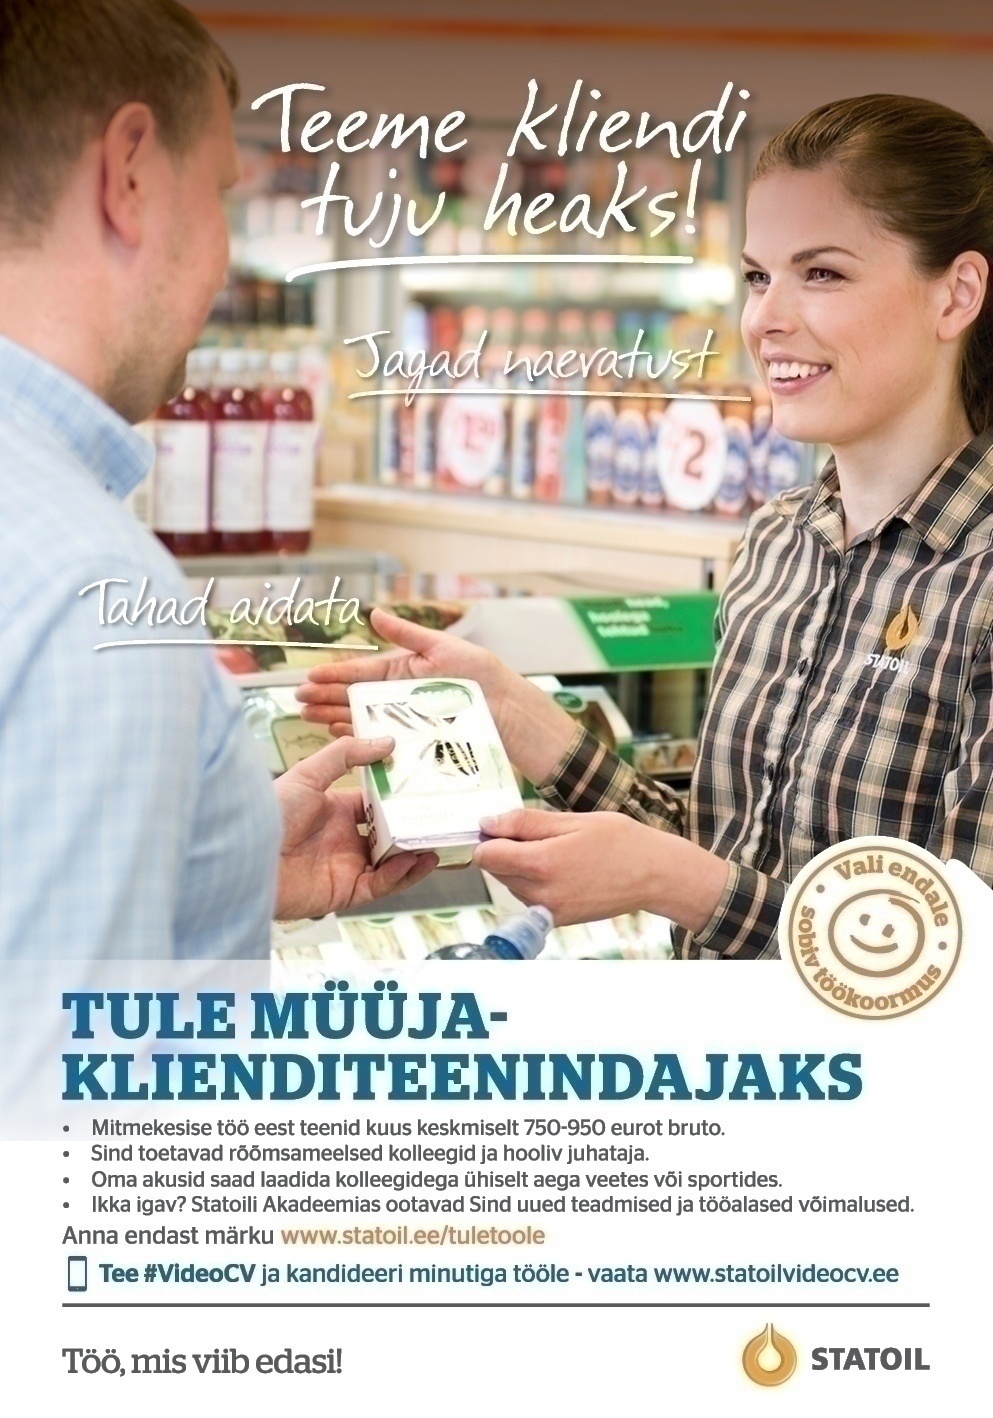 Circle K Eesti AS Müüja-klienditeenindaja Tallinna Viimsi/Petrooleumi teenindusjaama